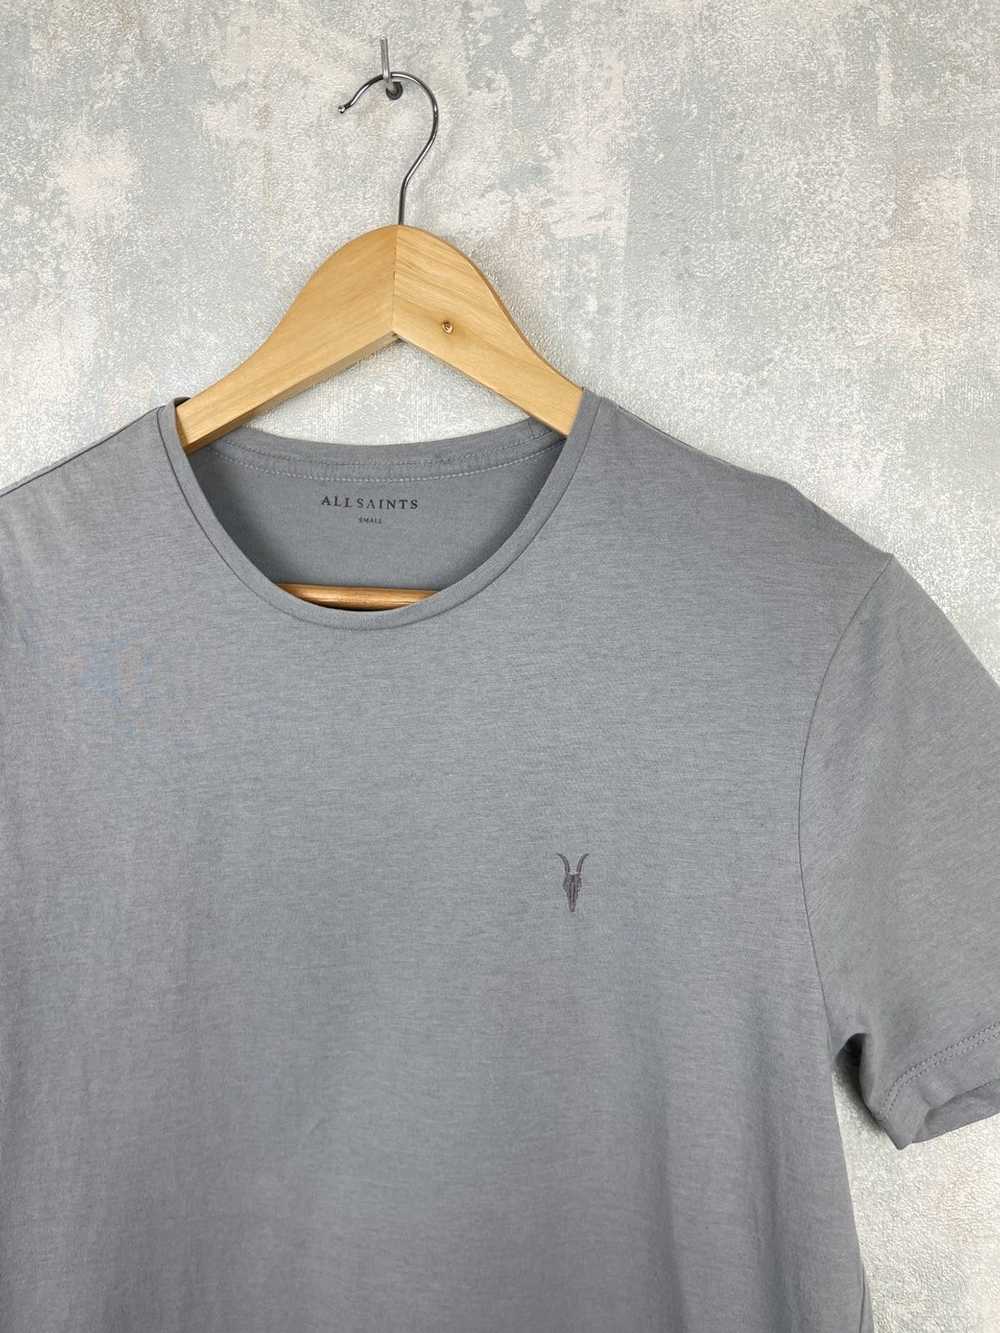 Allsaints AllSaints Grey T-Shirt - image 3